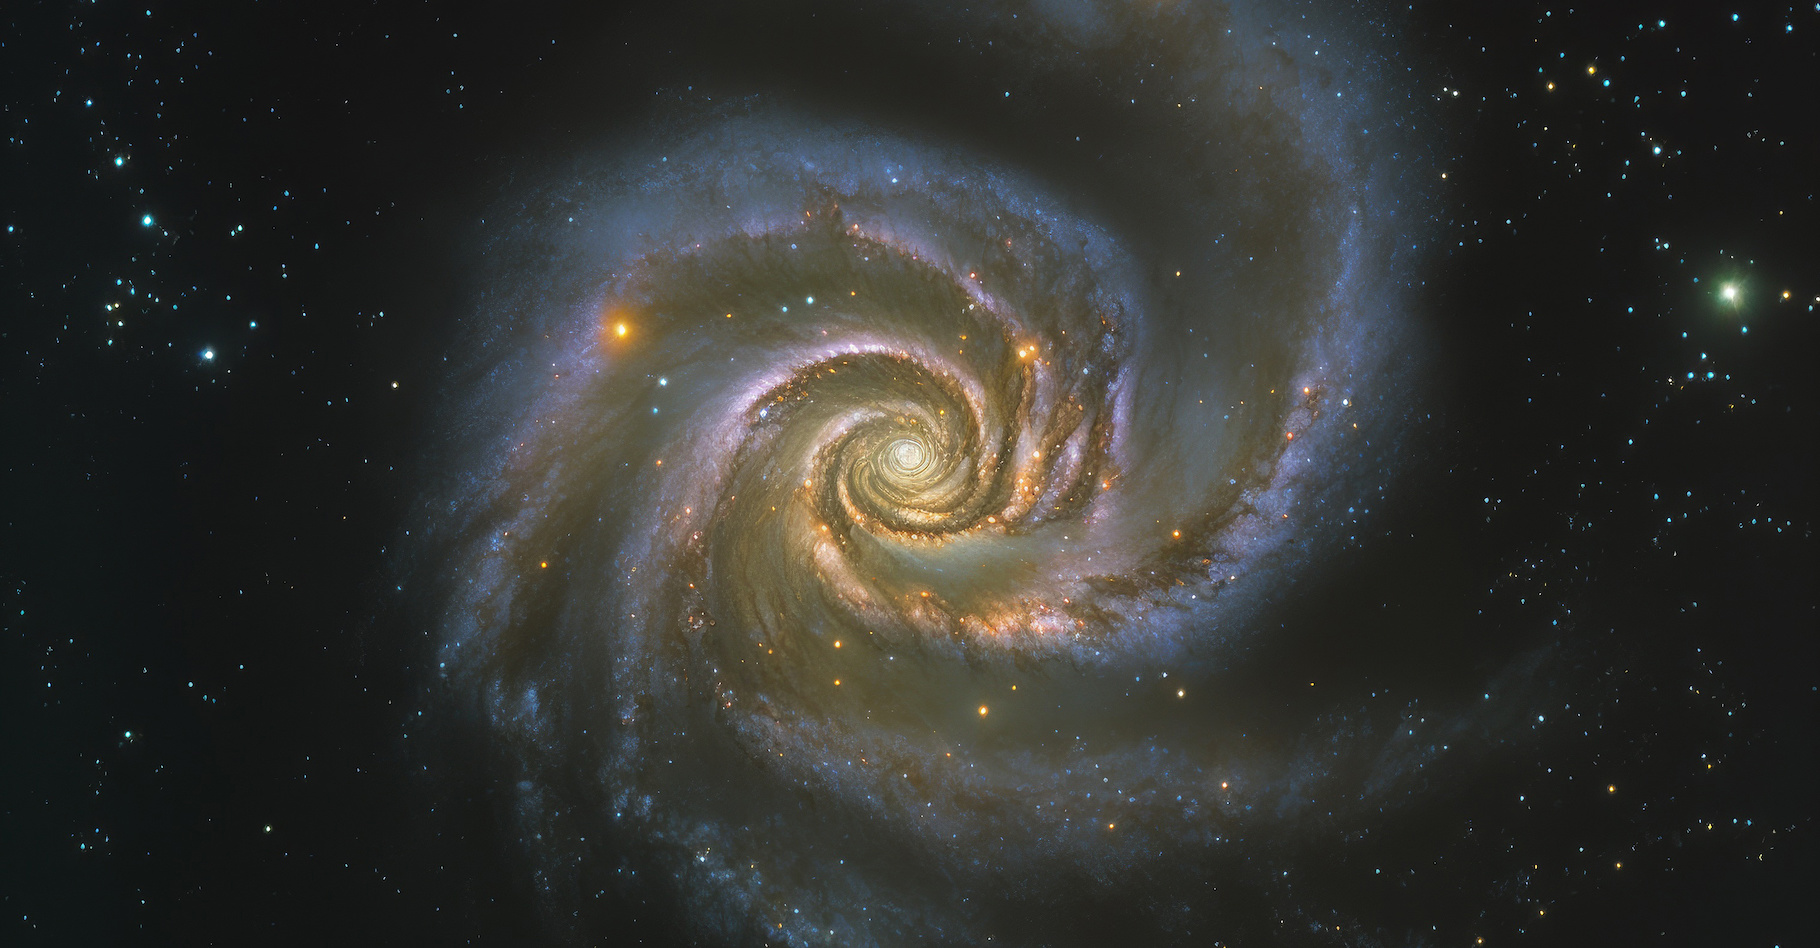 Une supernova vient d’être observée dans la galaxie M101 dite galaxie du Moulinet, une galaxie spirale qui ressemble à cette vue d'artiste. © AkuAku, Adobe Stock